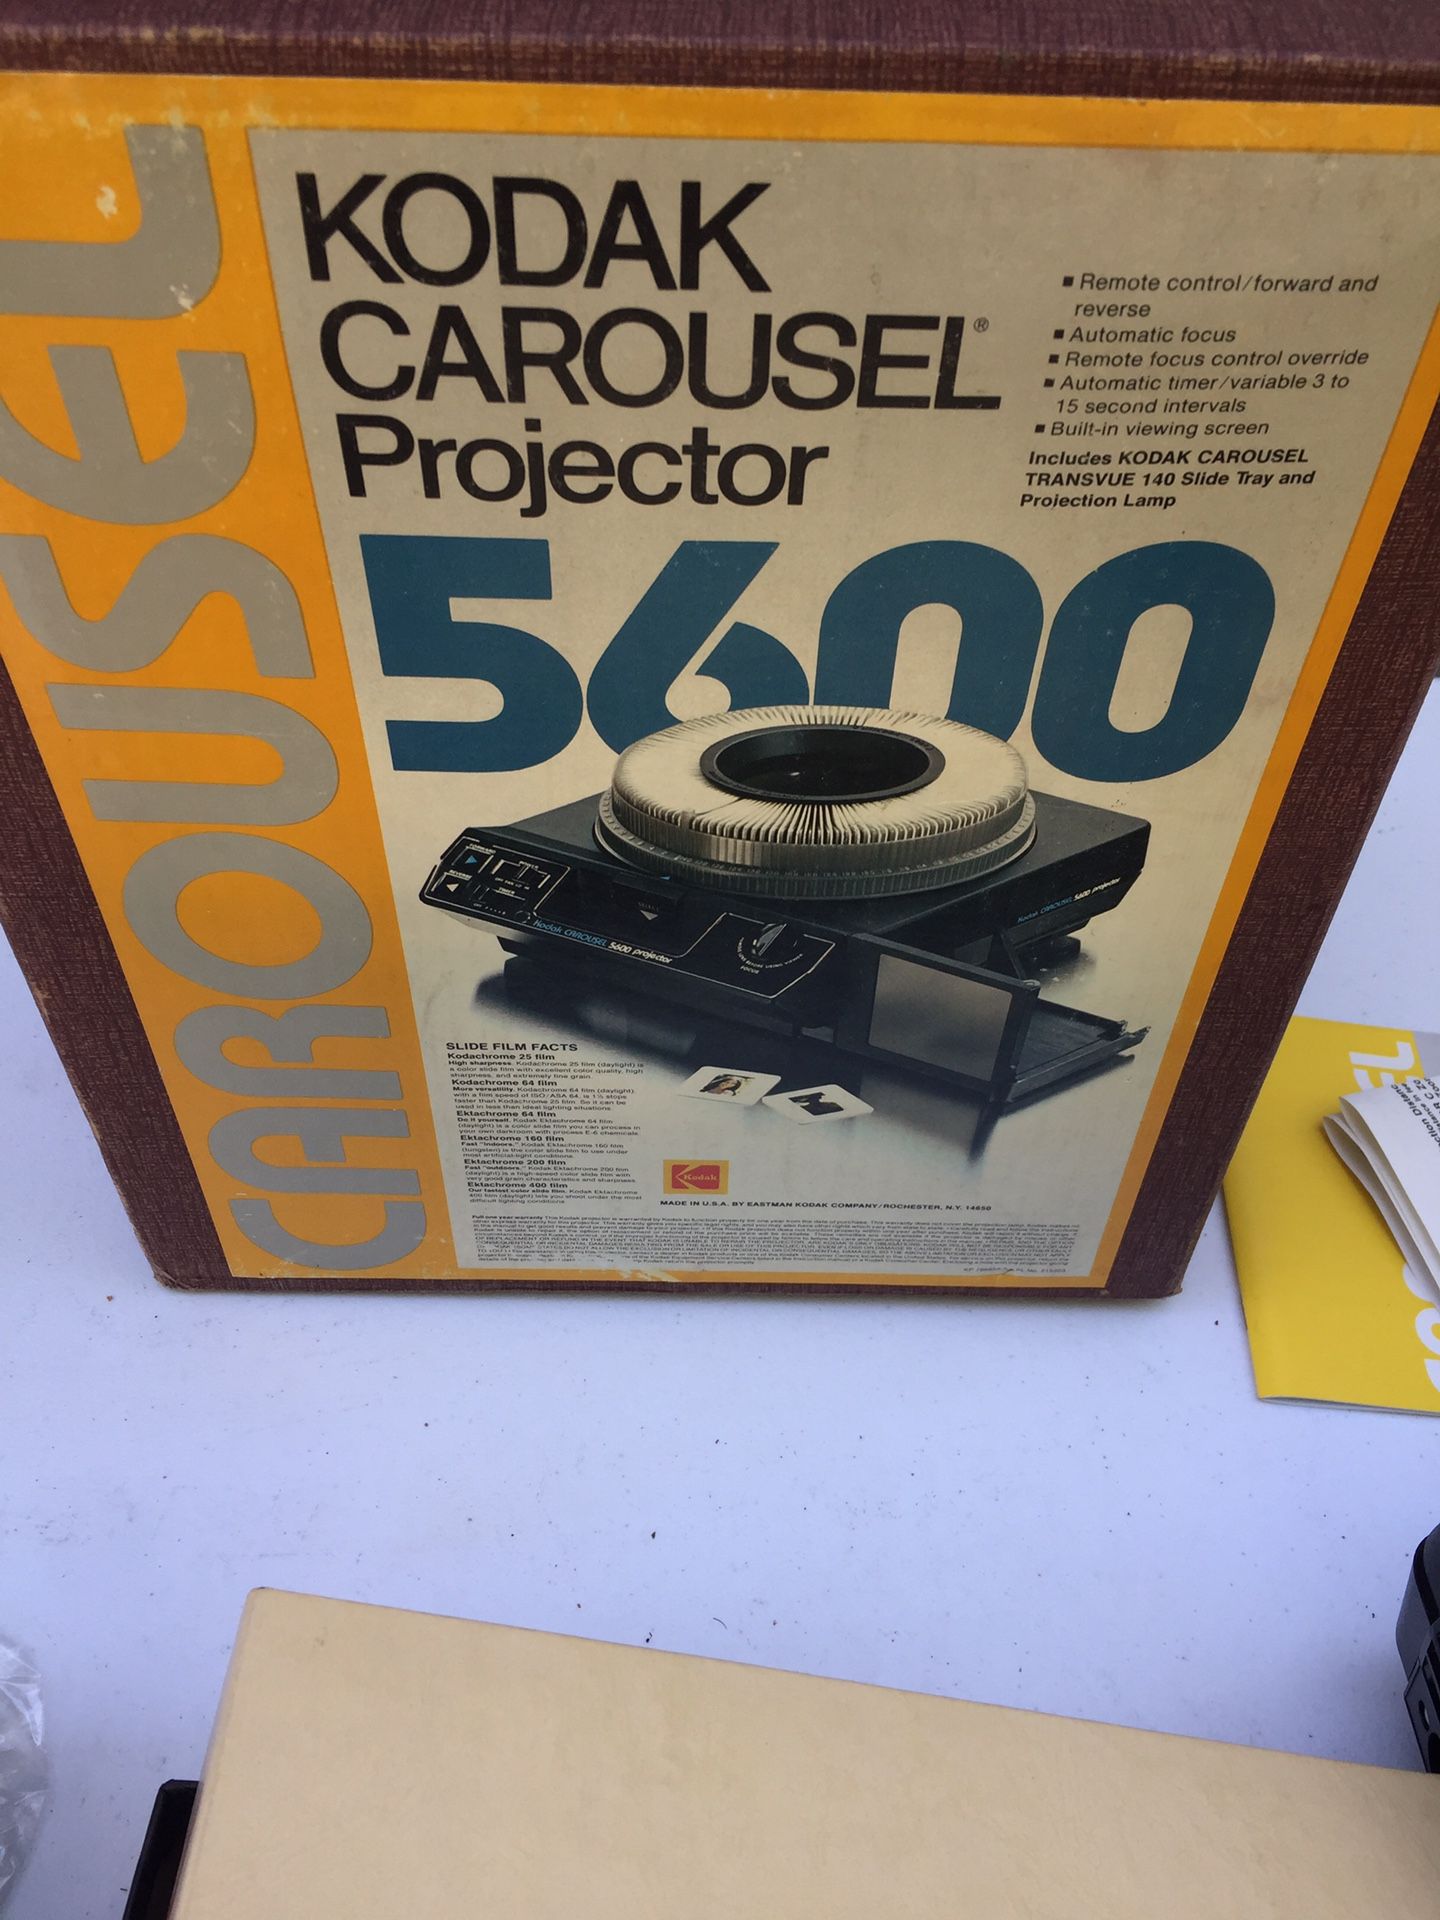 Kodak Carousel Projector 5600